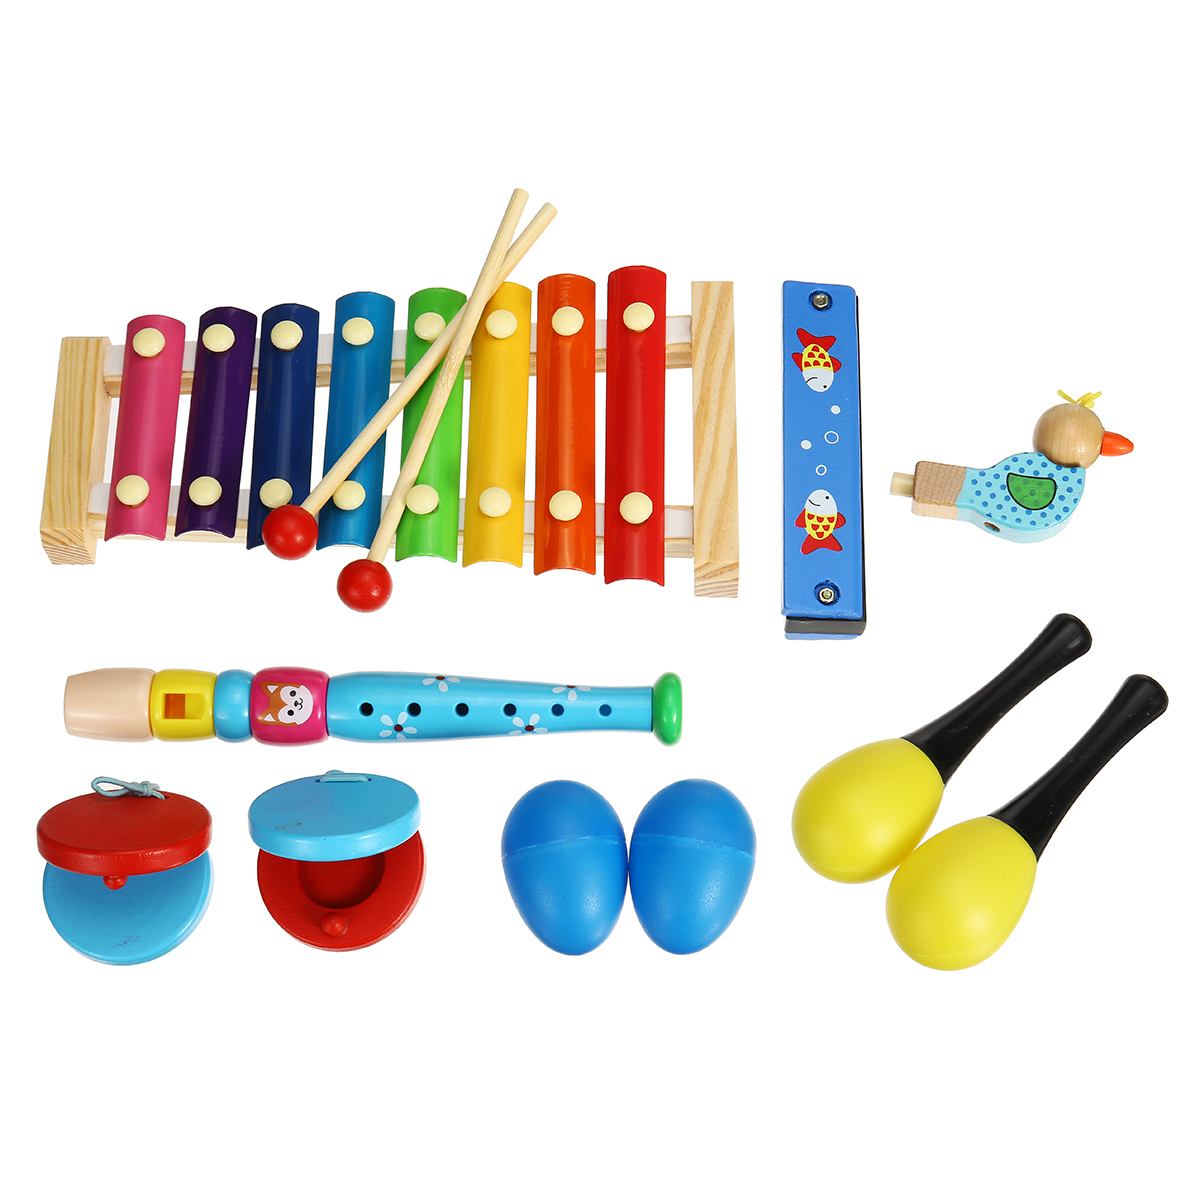 

7 штук музыкальных инструментов Orff Set Kids Puzzle Percussion для детской сенсорной практики